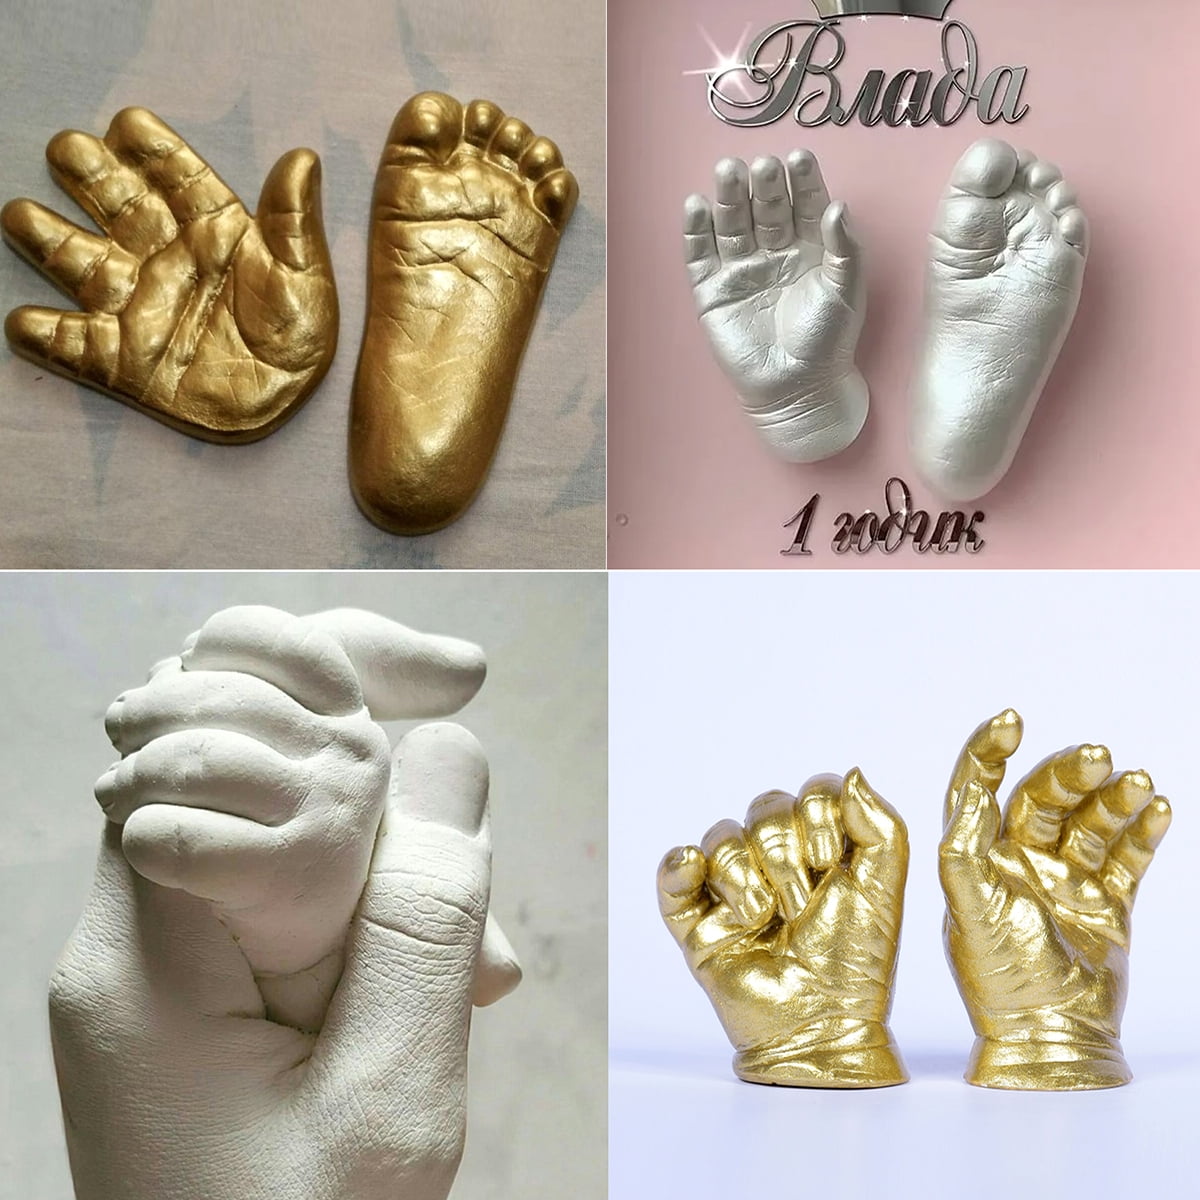 Hand Mold Set Souvenir Casting Set DIY Hand Foot Print Mold